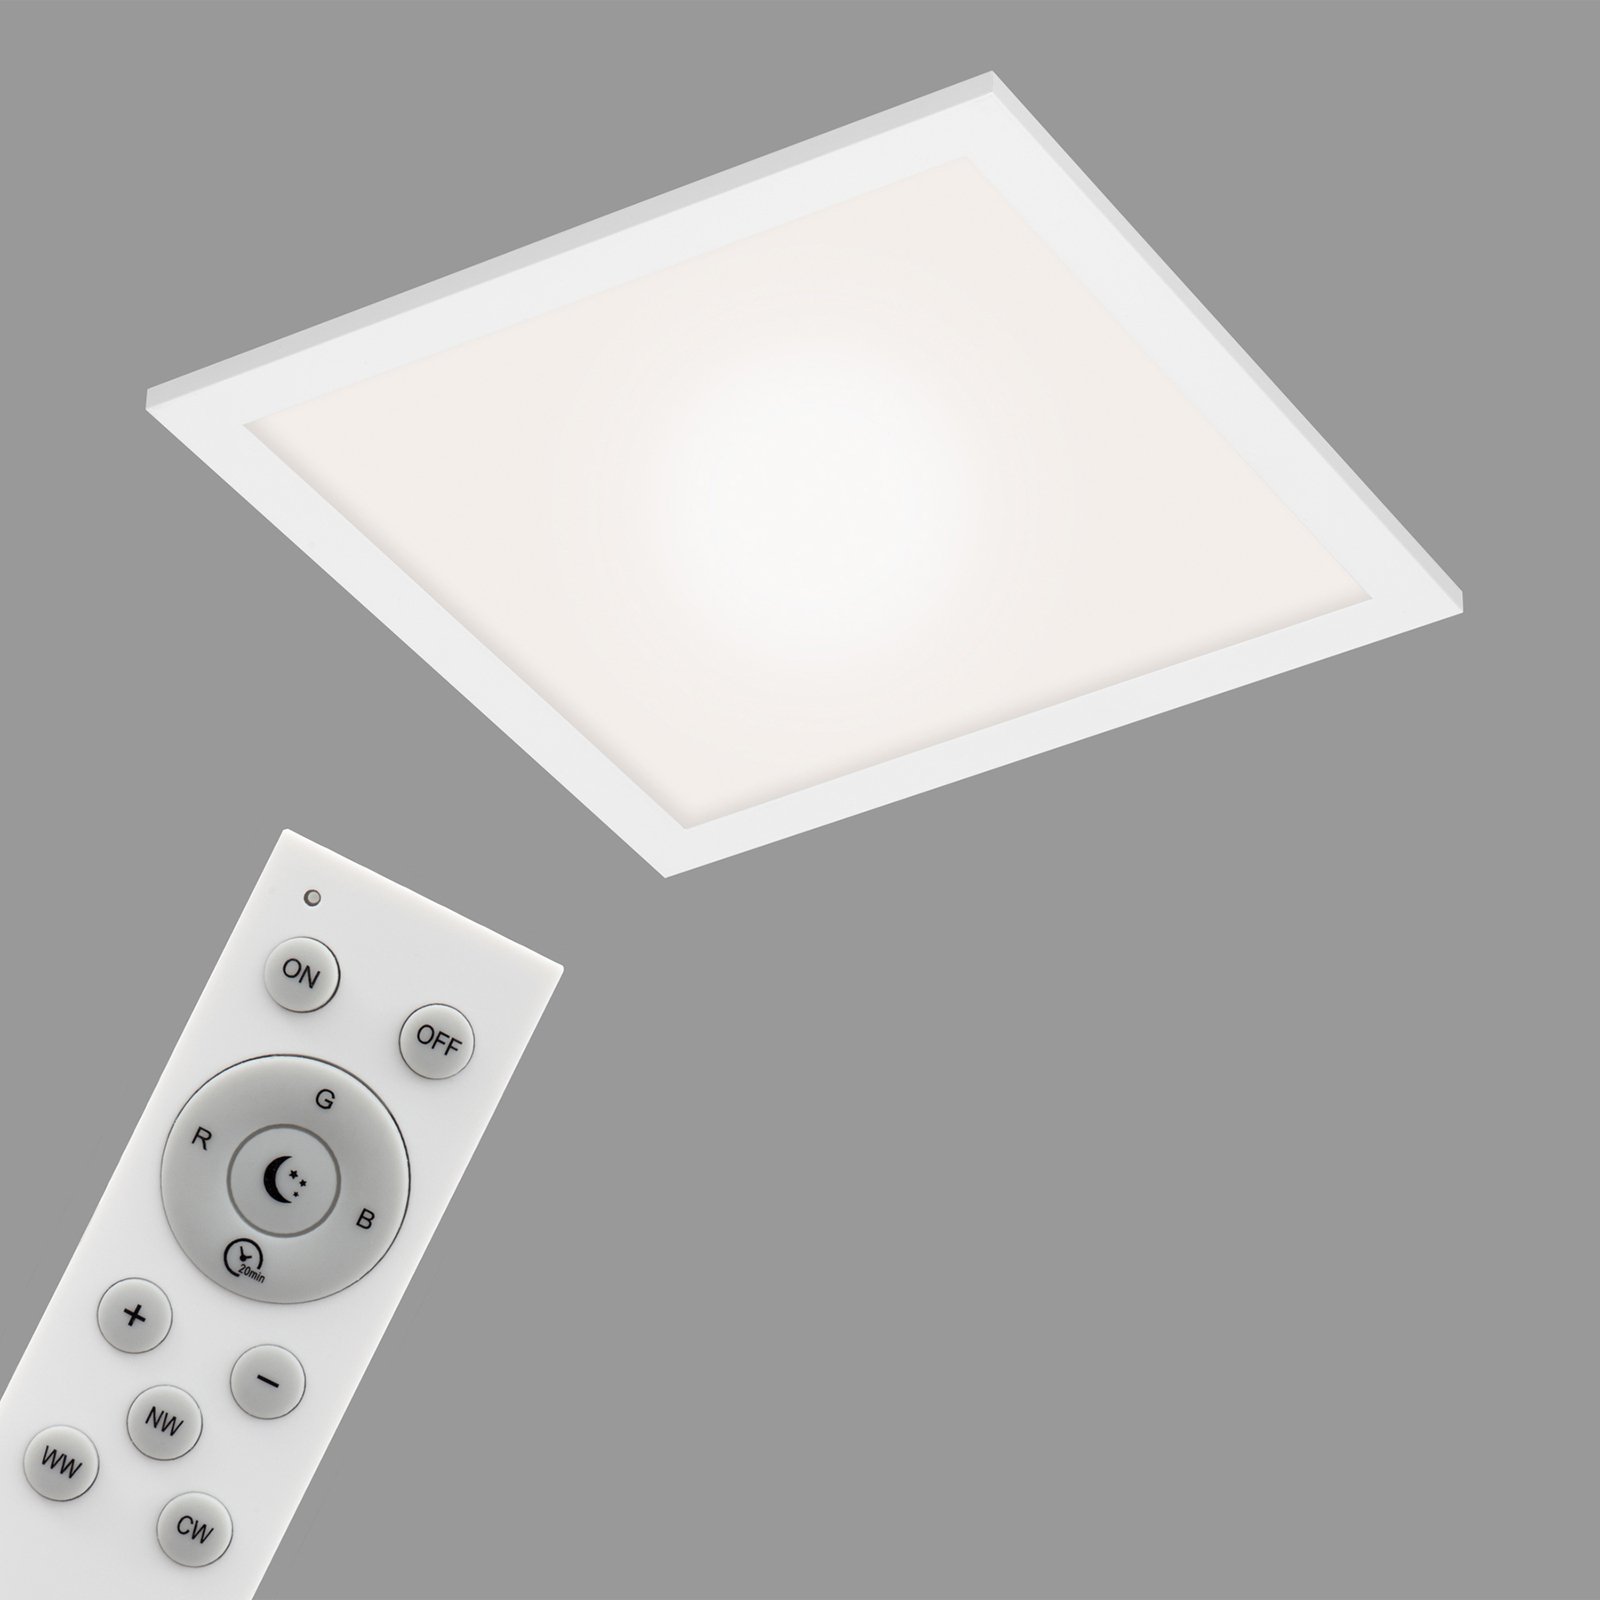 LED mennyezeti lámpa Link, fényerőszabályzó, CCT, 29.5x29.5cm